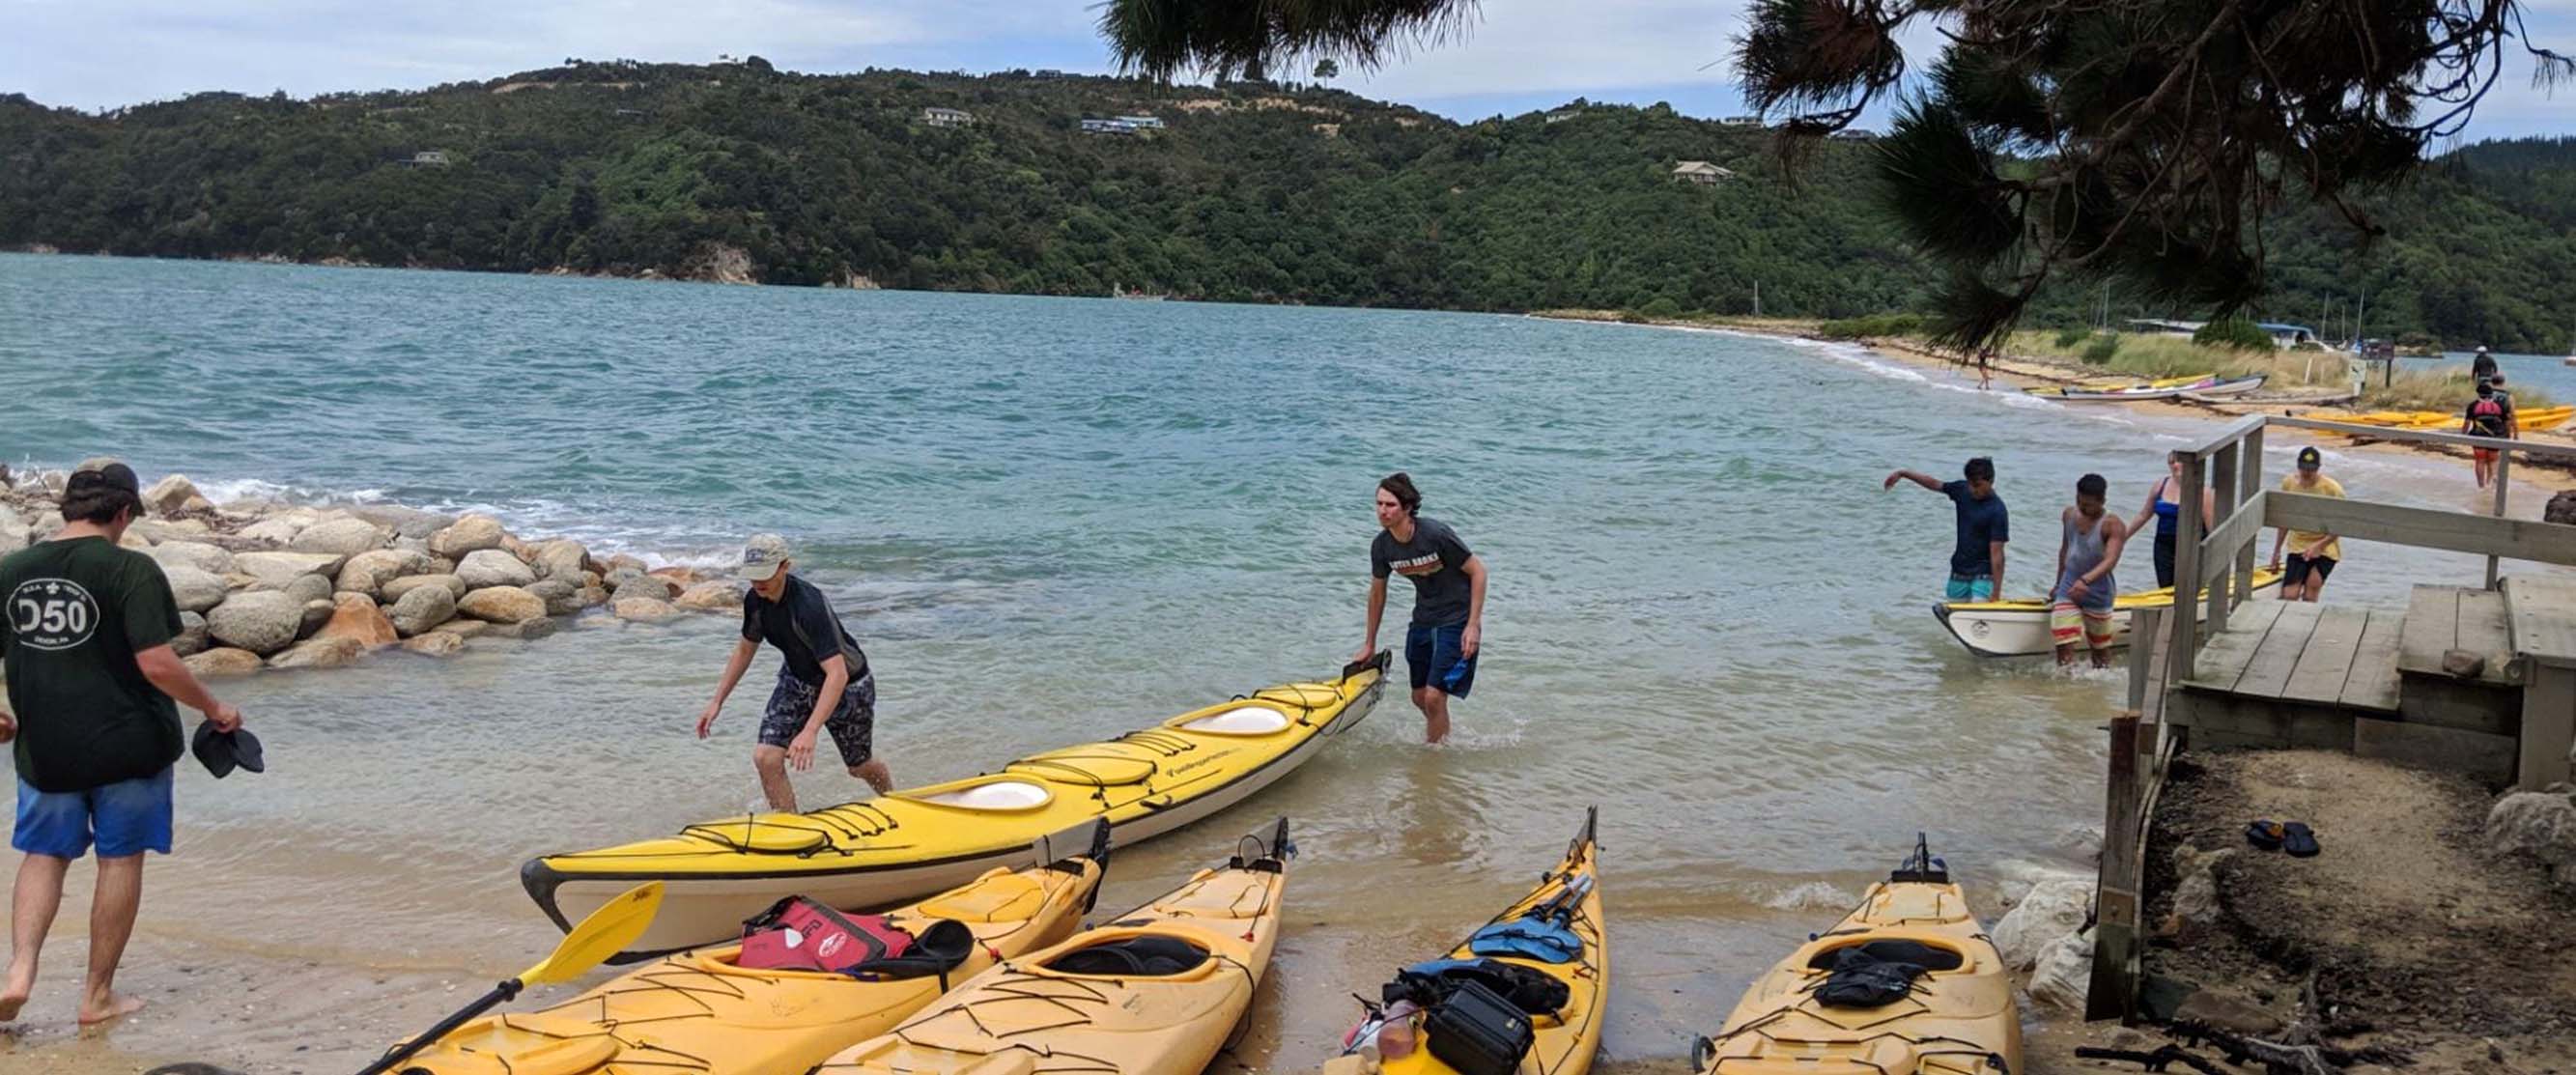 新西兰学生皮划艇